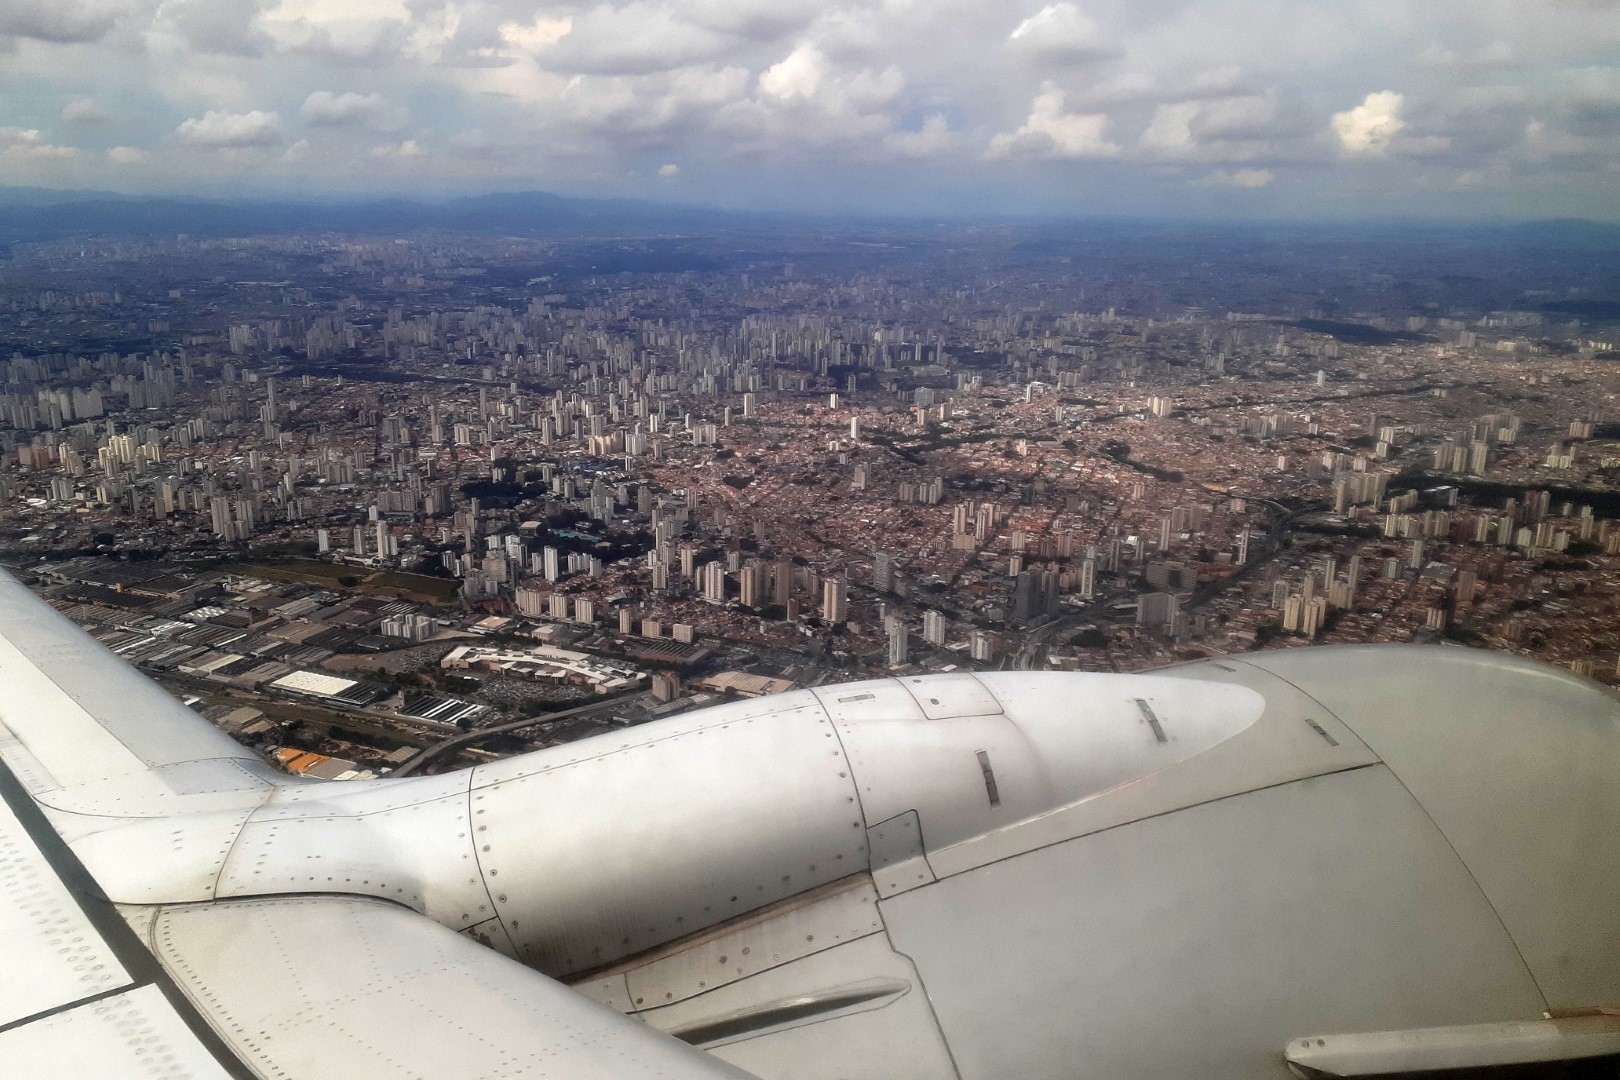 Takeoff in Aeroporto de São Paulo/Congonhas